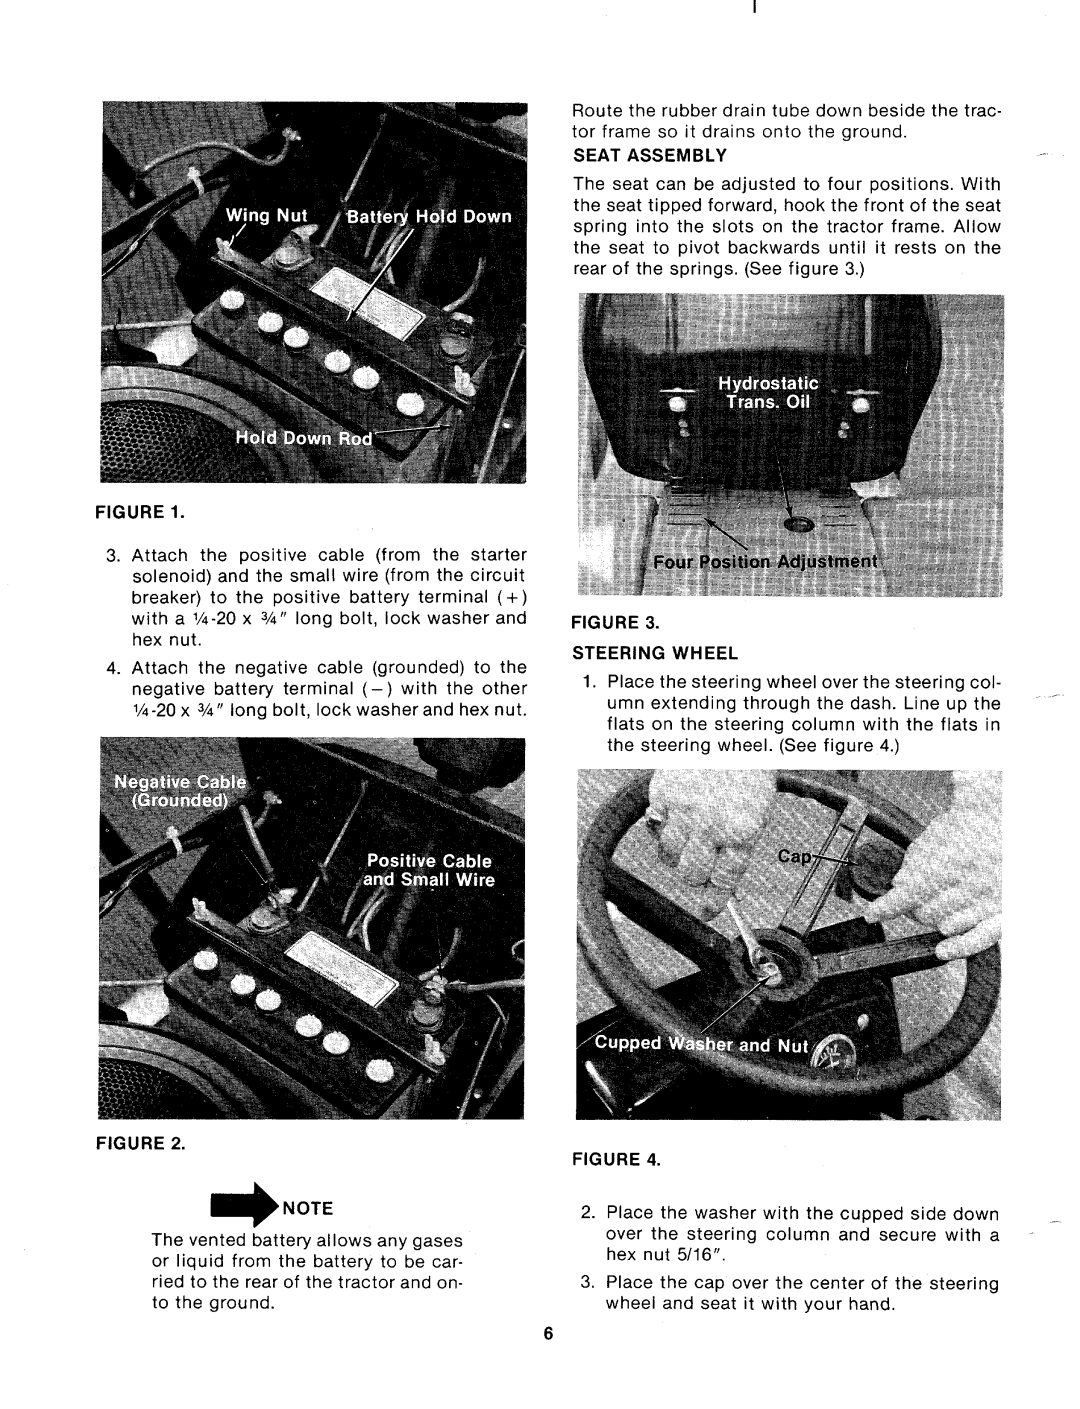 MTD 130-720A manual 